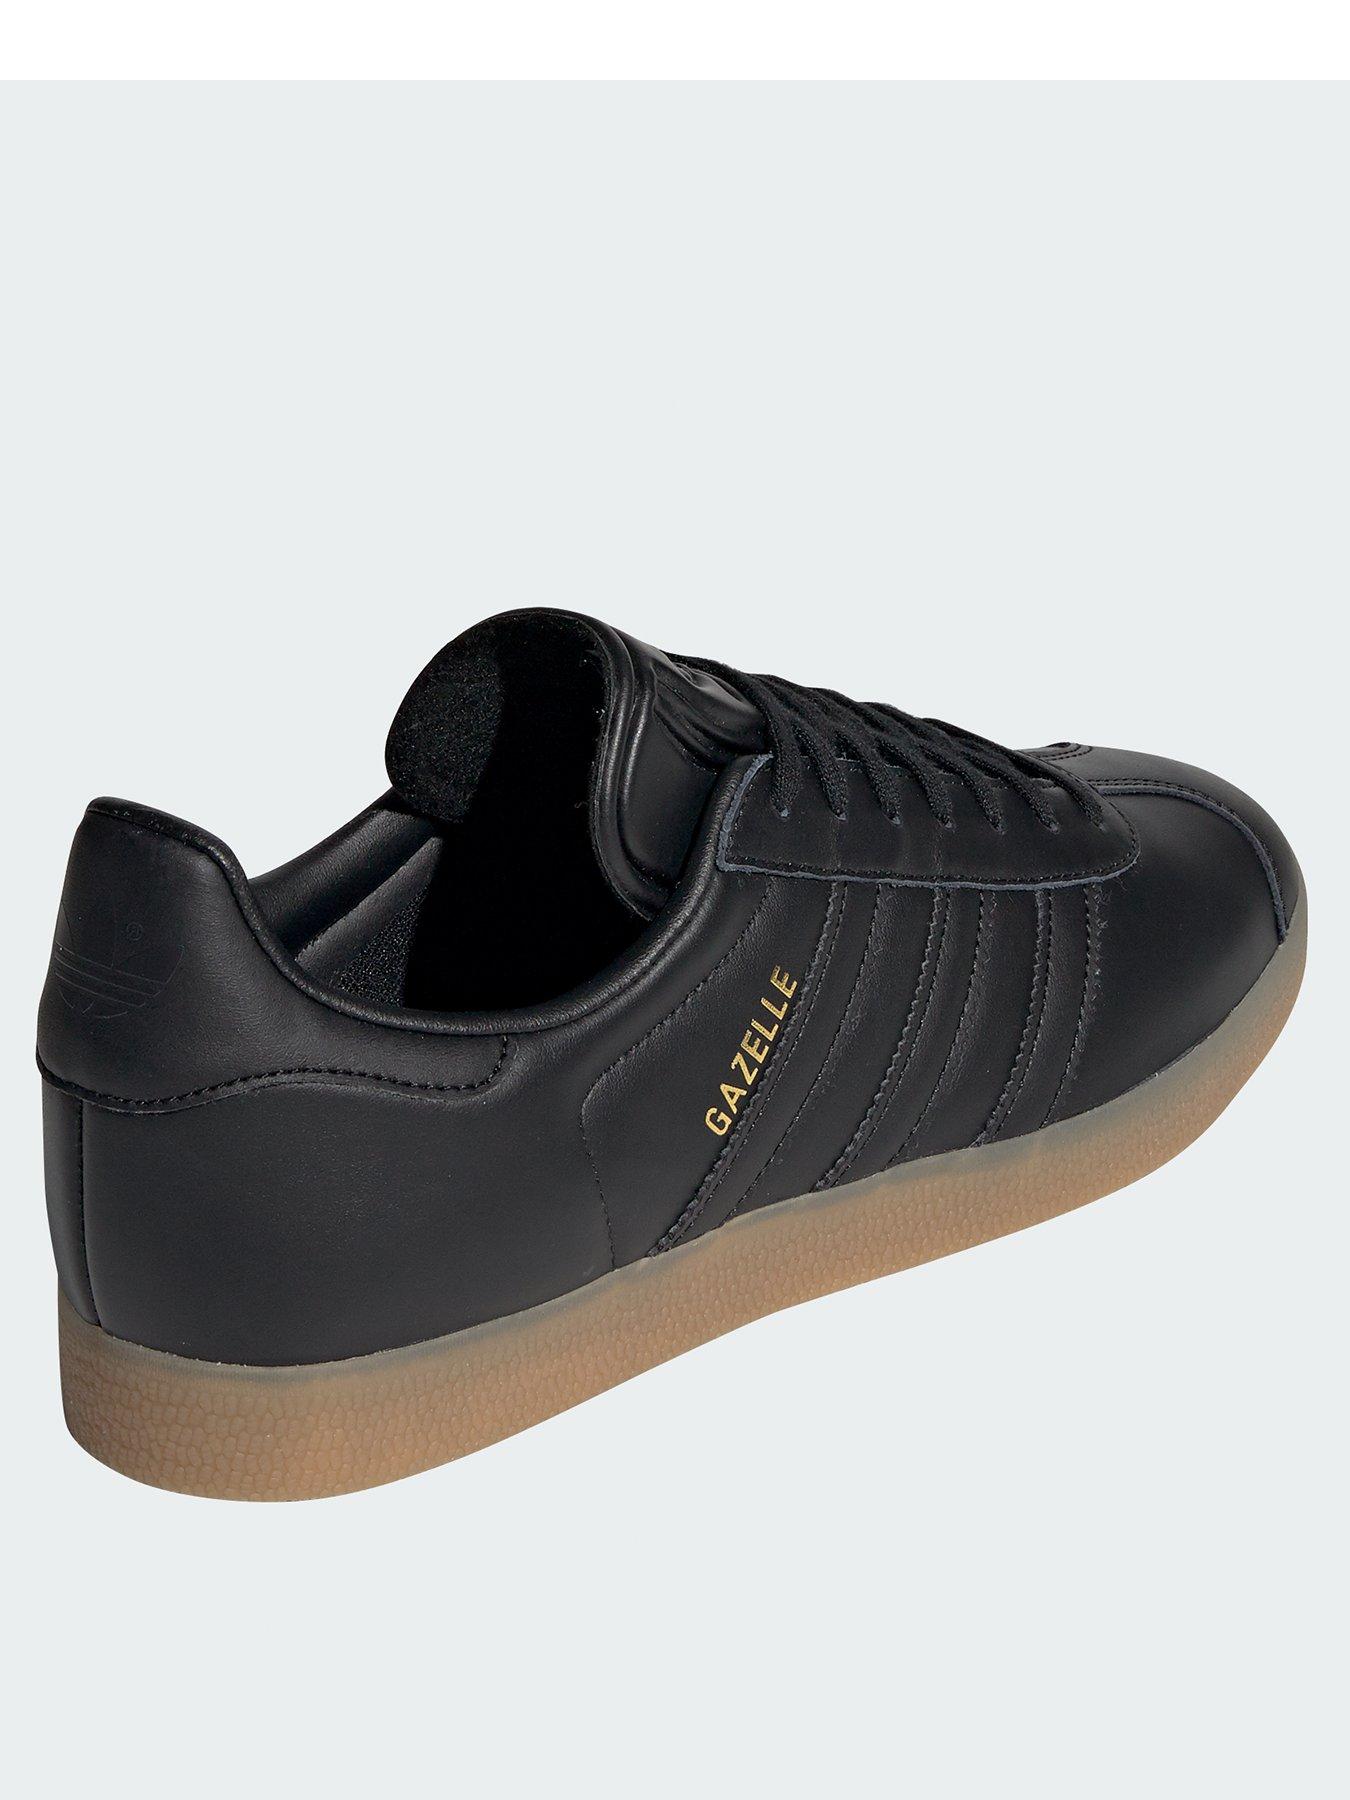 adidas gazelle black and gum